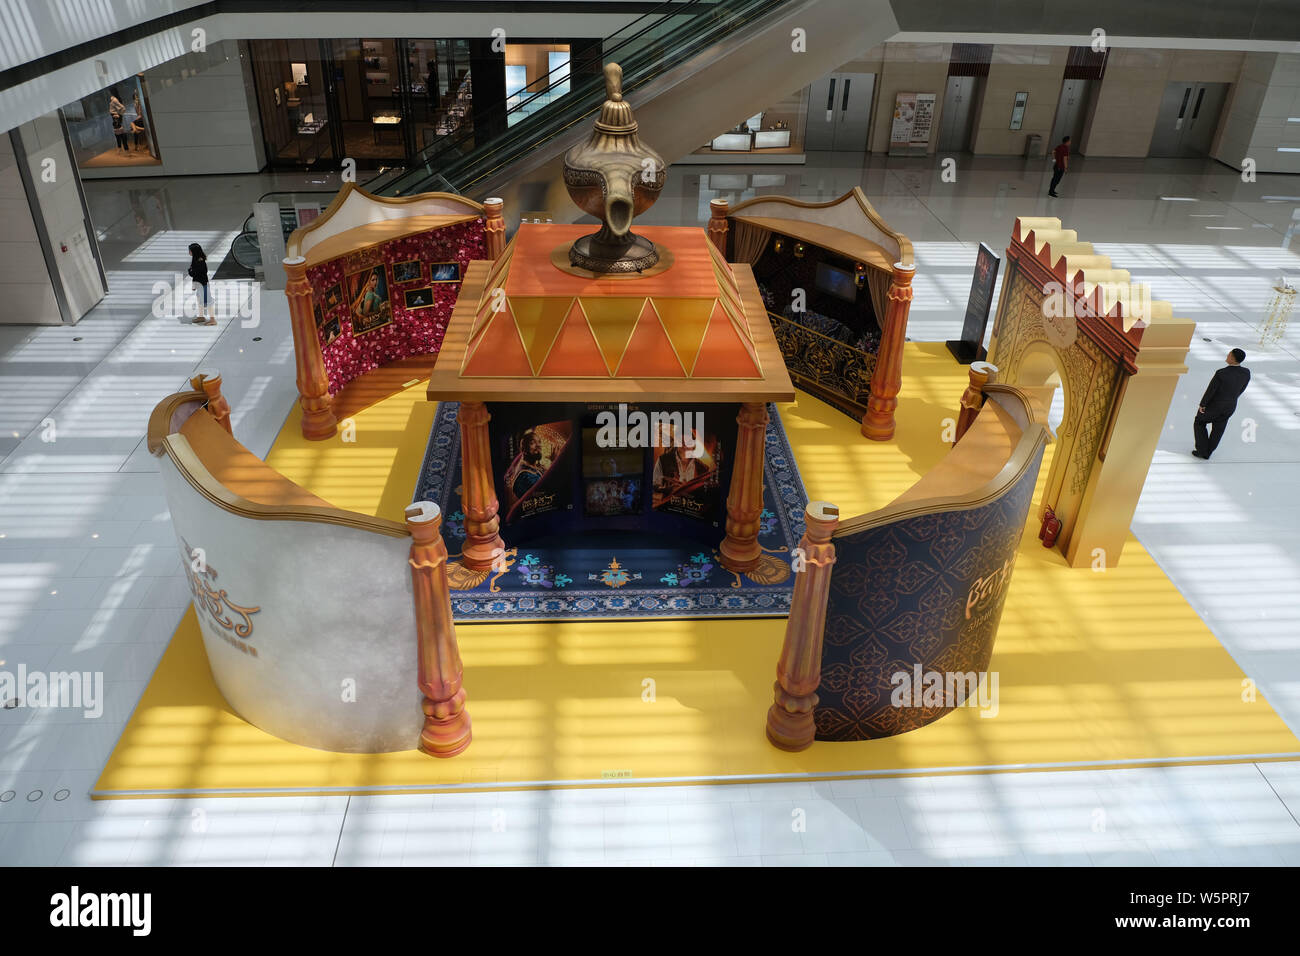 Eine Kunstinstallation mit dem Thema der amerikanischen Fantasy Musical Film "Aladdin" von Walt Disney Pictures produziert in einem Einkaufszentrum in Sie gesehen ist Stockfoto